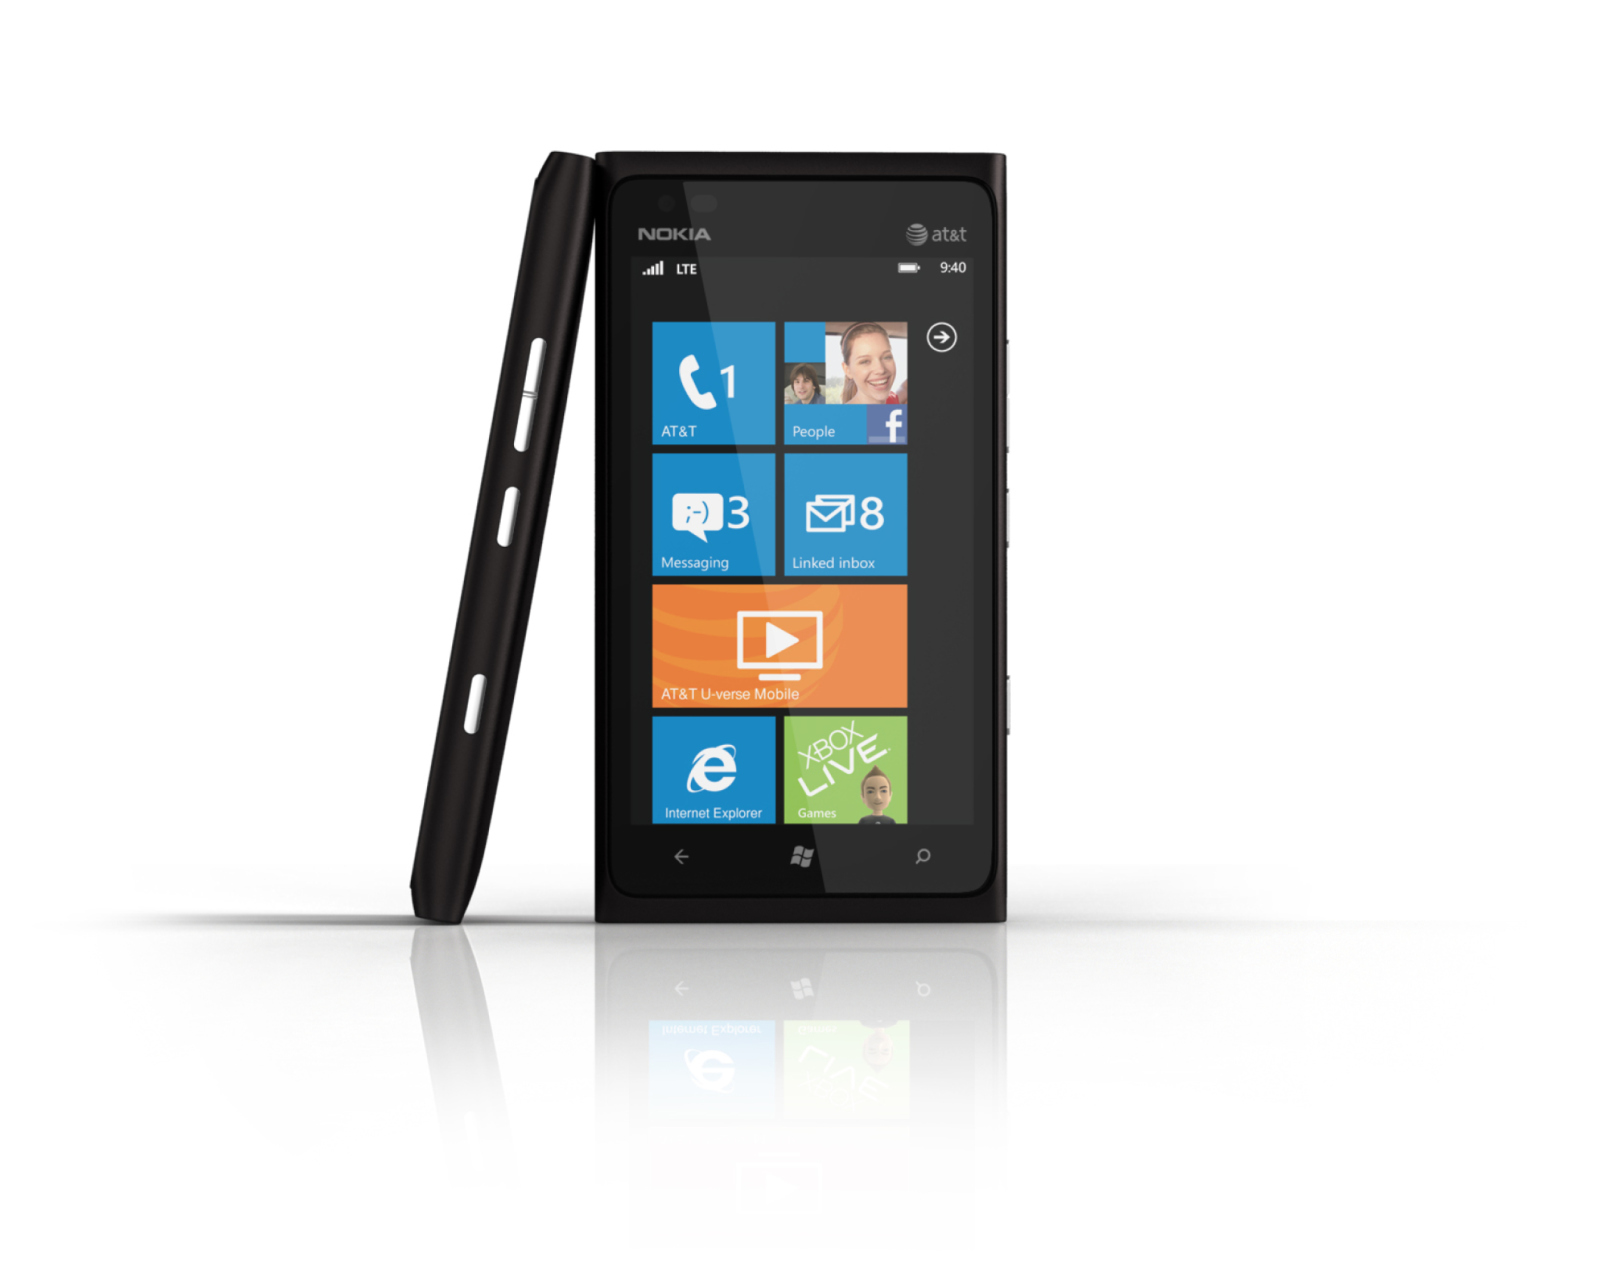 Windows Phone Nokia Lumia 900 wallpaper 1600x1280